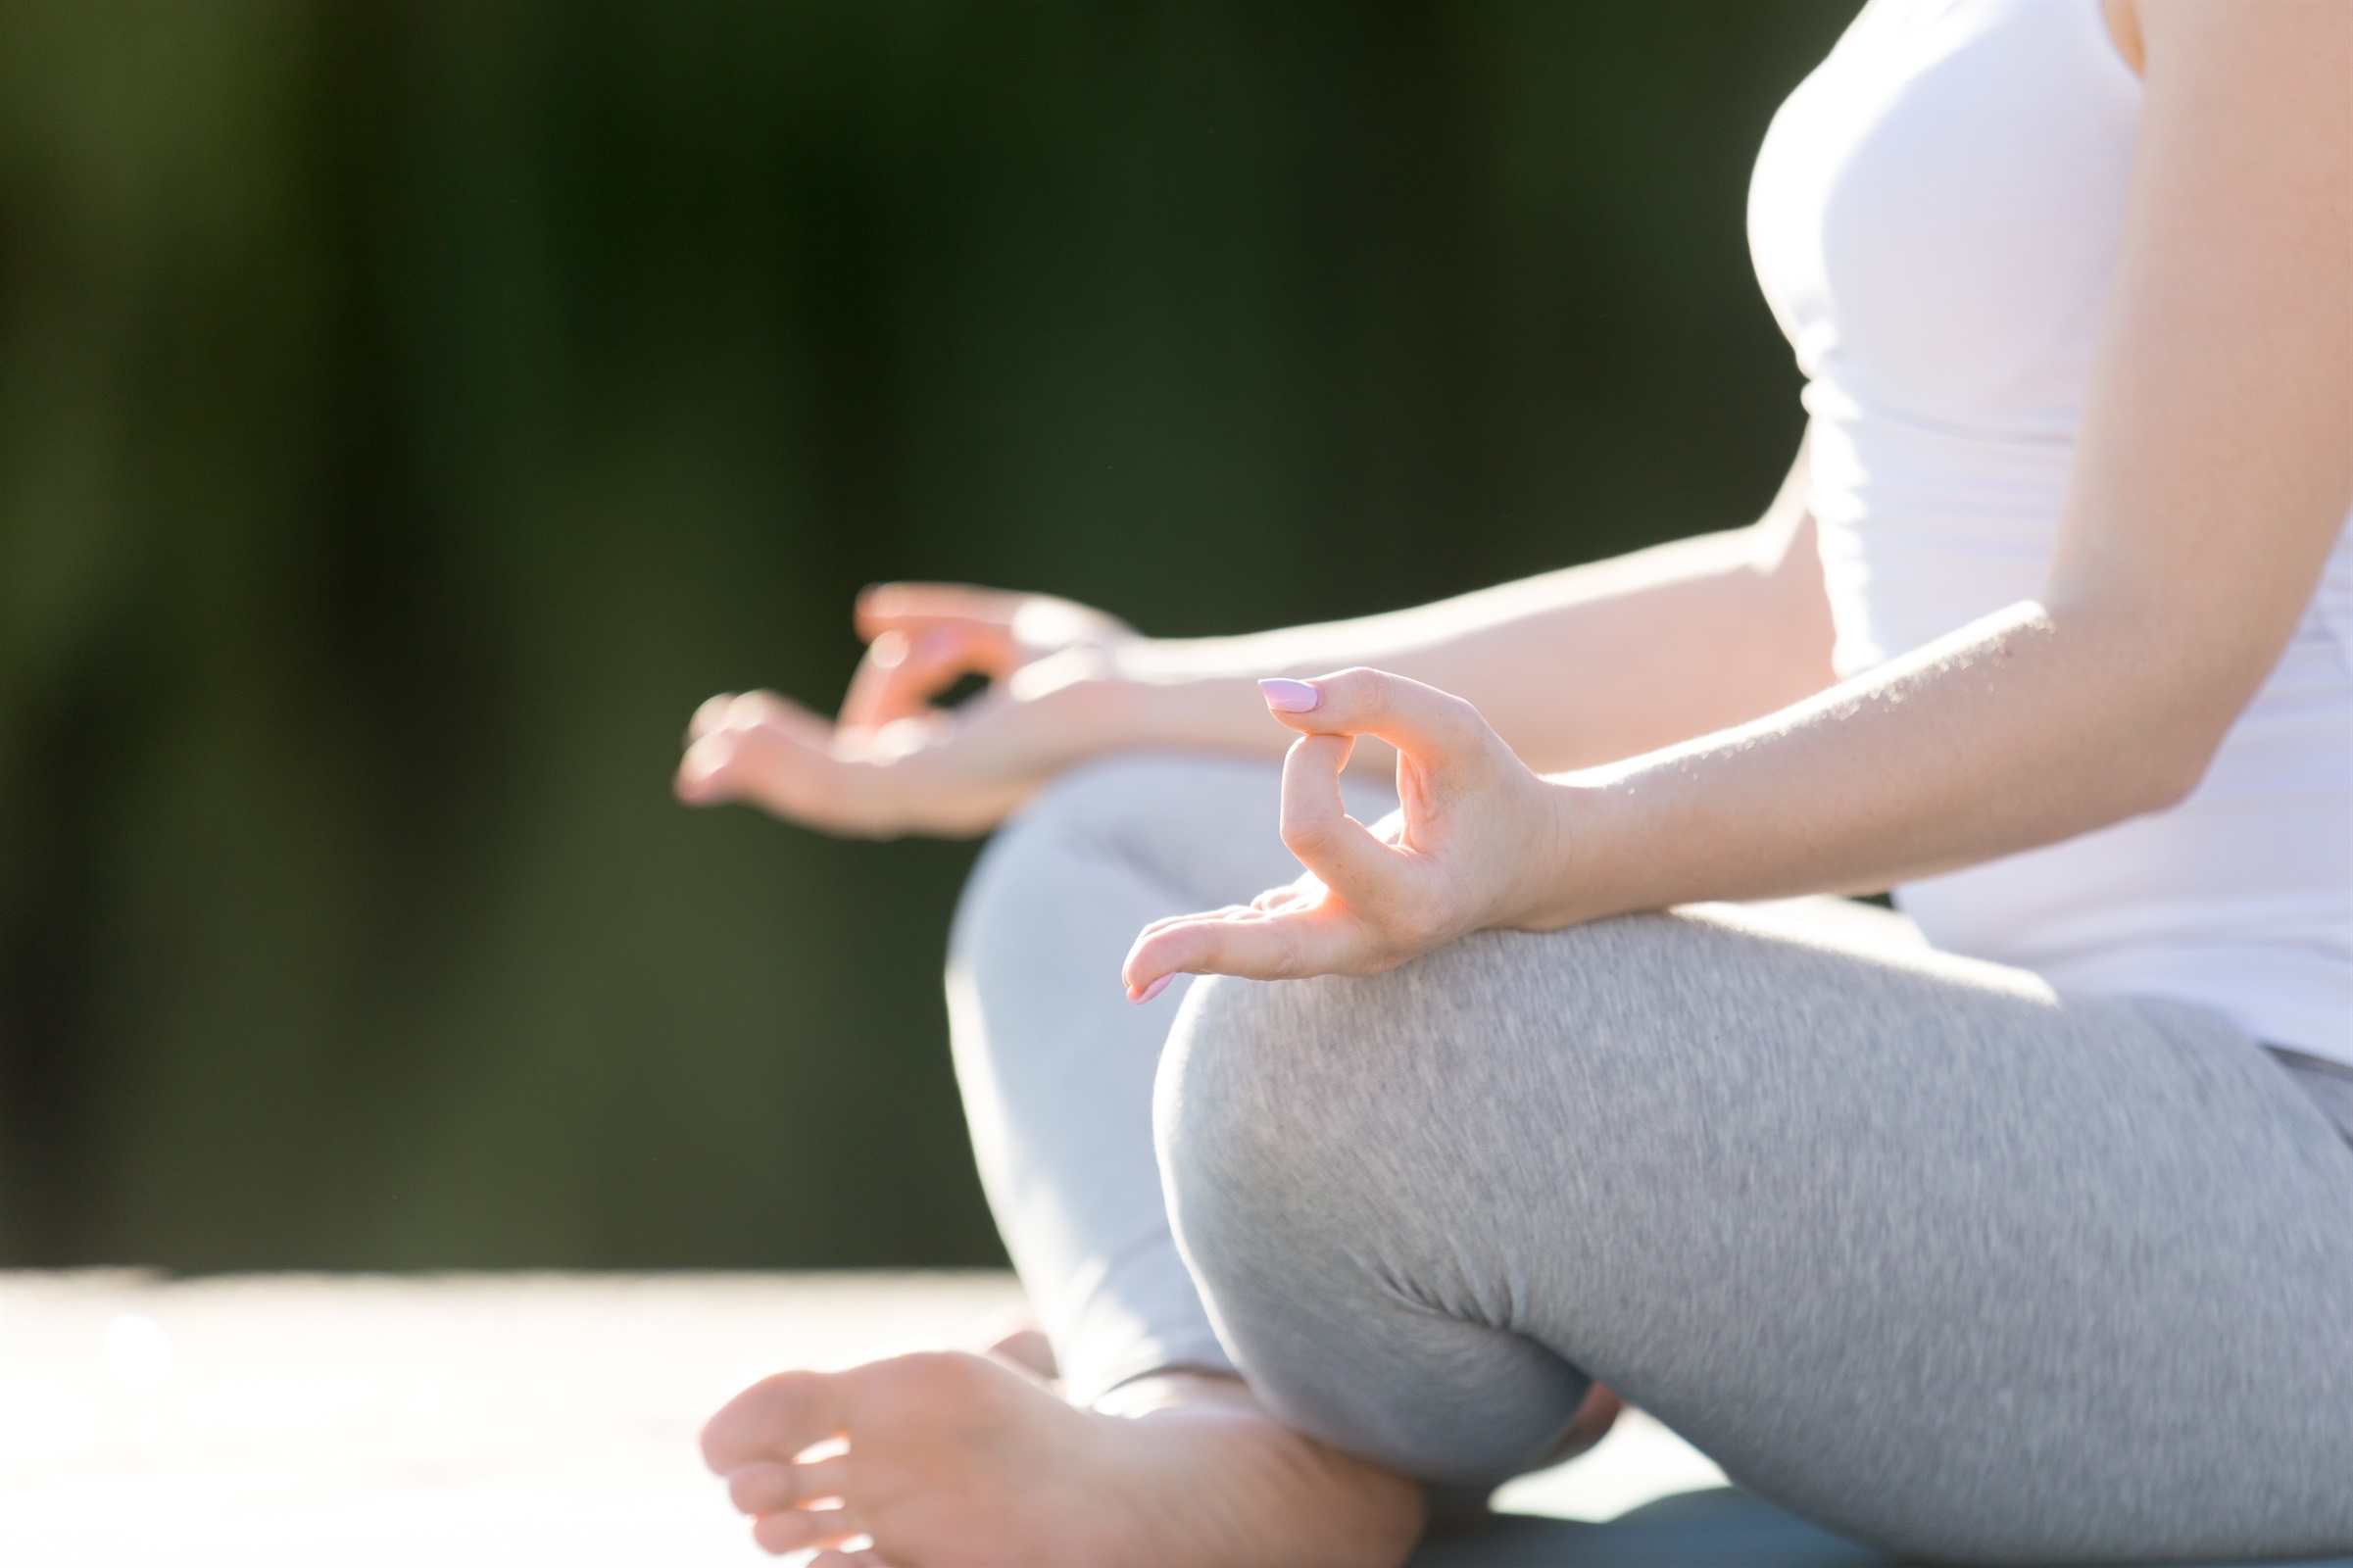 Taller sobre l’ús terapèutic del ioga a la vida diària amb motiu del Dia Internacional del Ioga.